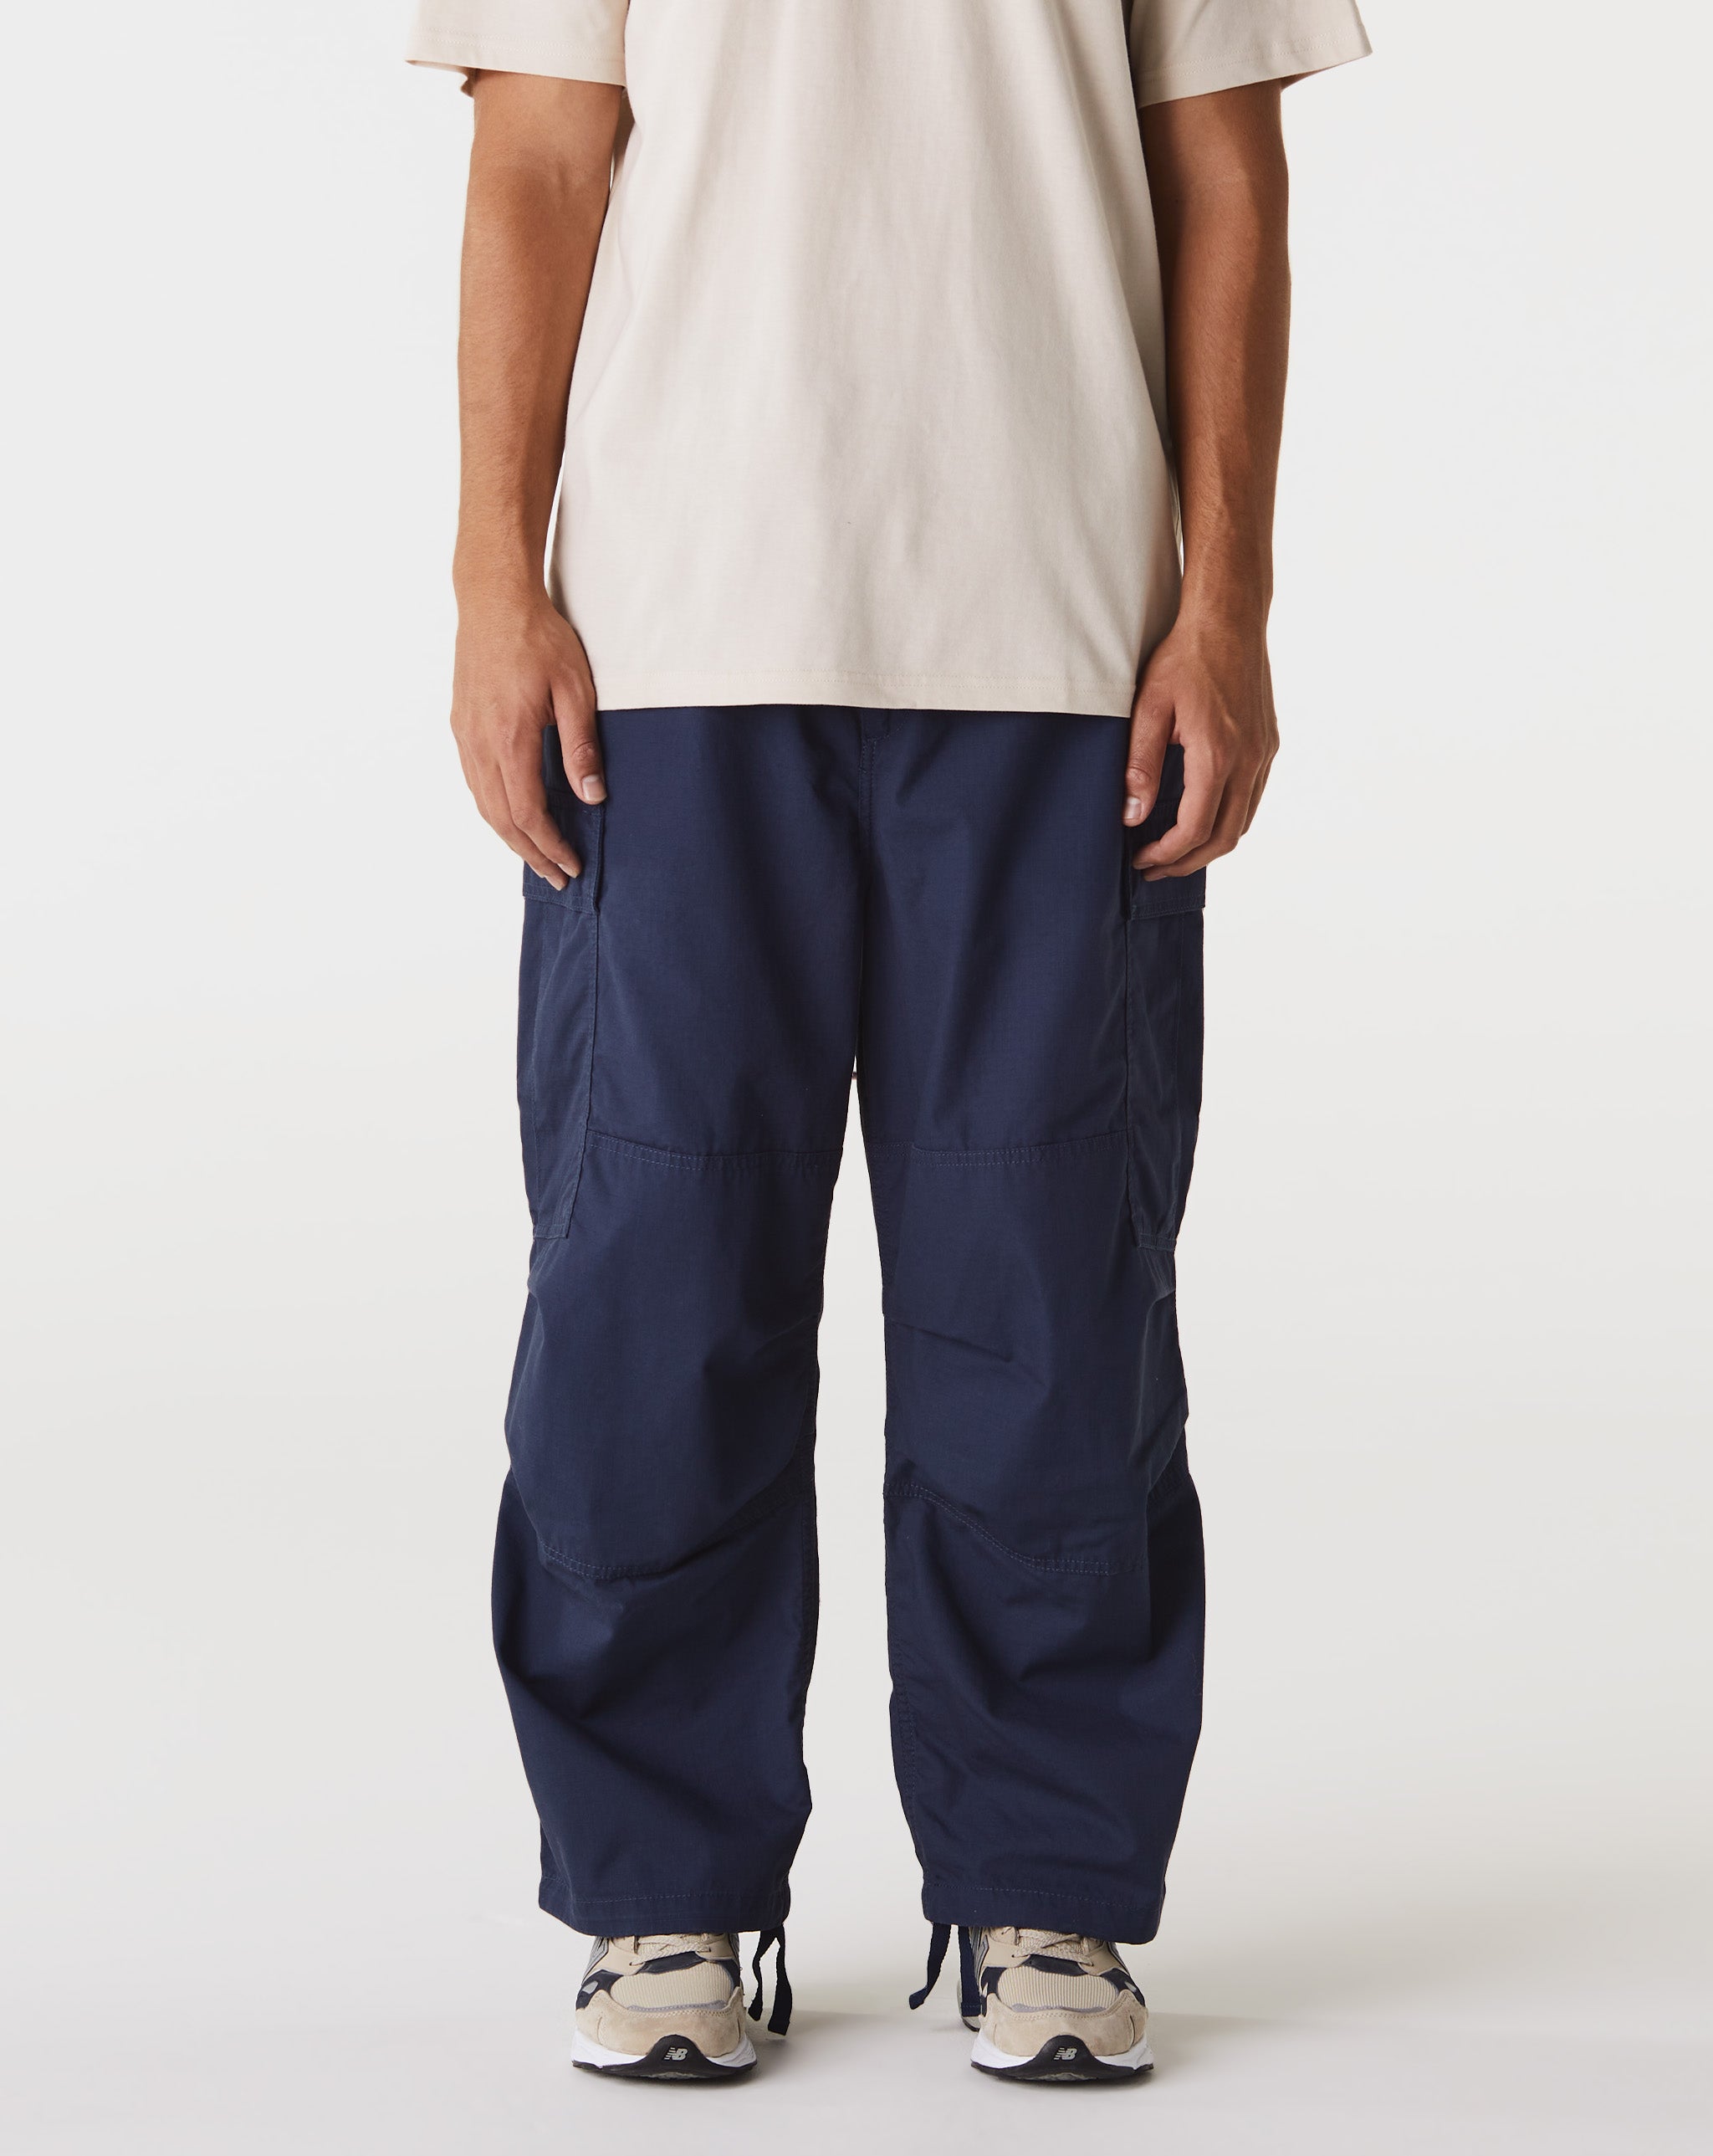 Carhartt WIP Floral Cami Top And Frill Shorts Pyjama Set  - Cheap Urlfreeze Jordan outlet